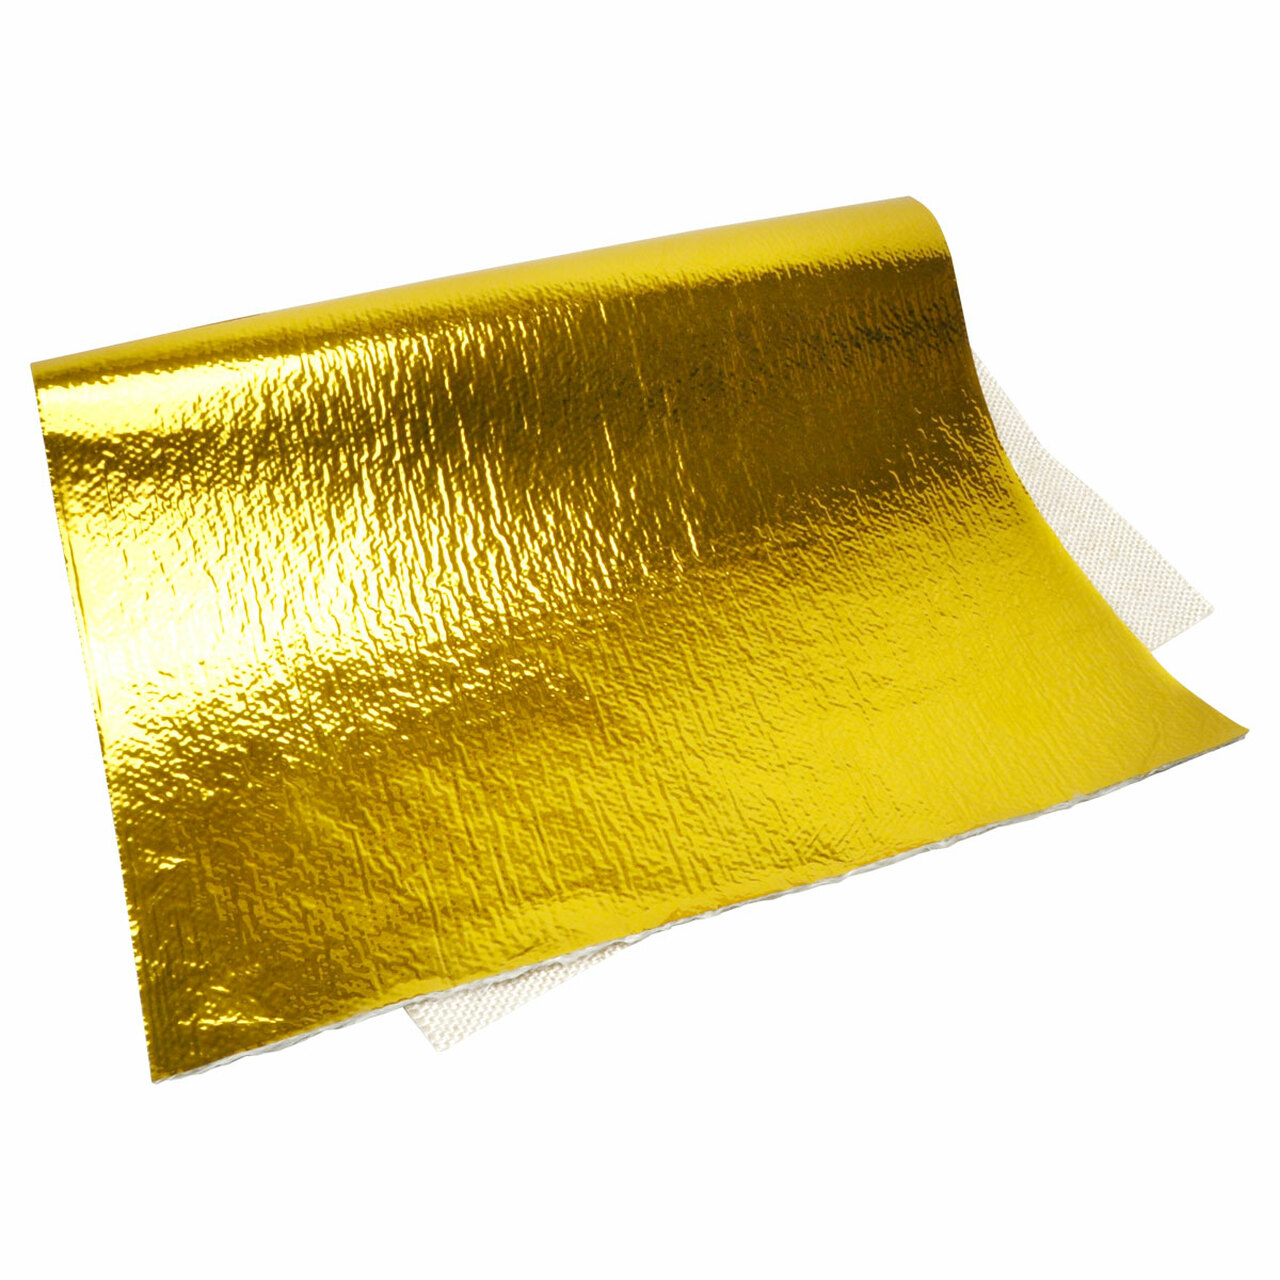 DEI Heat Screen GOLD - Foglio termico adesivo isolante oro 450° 